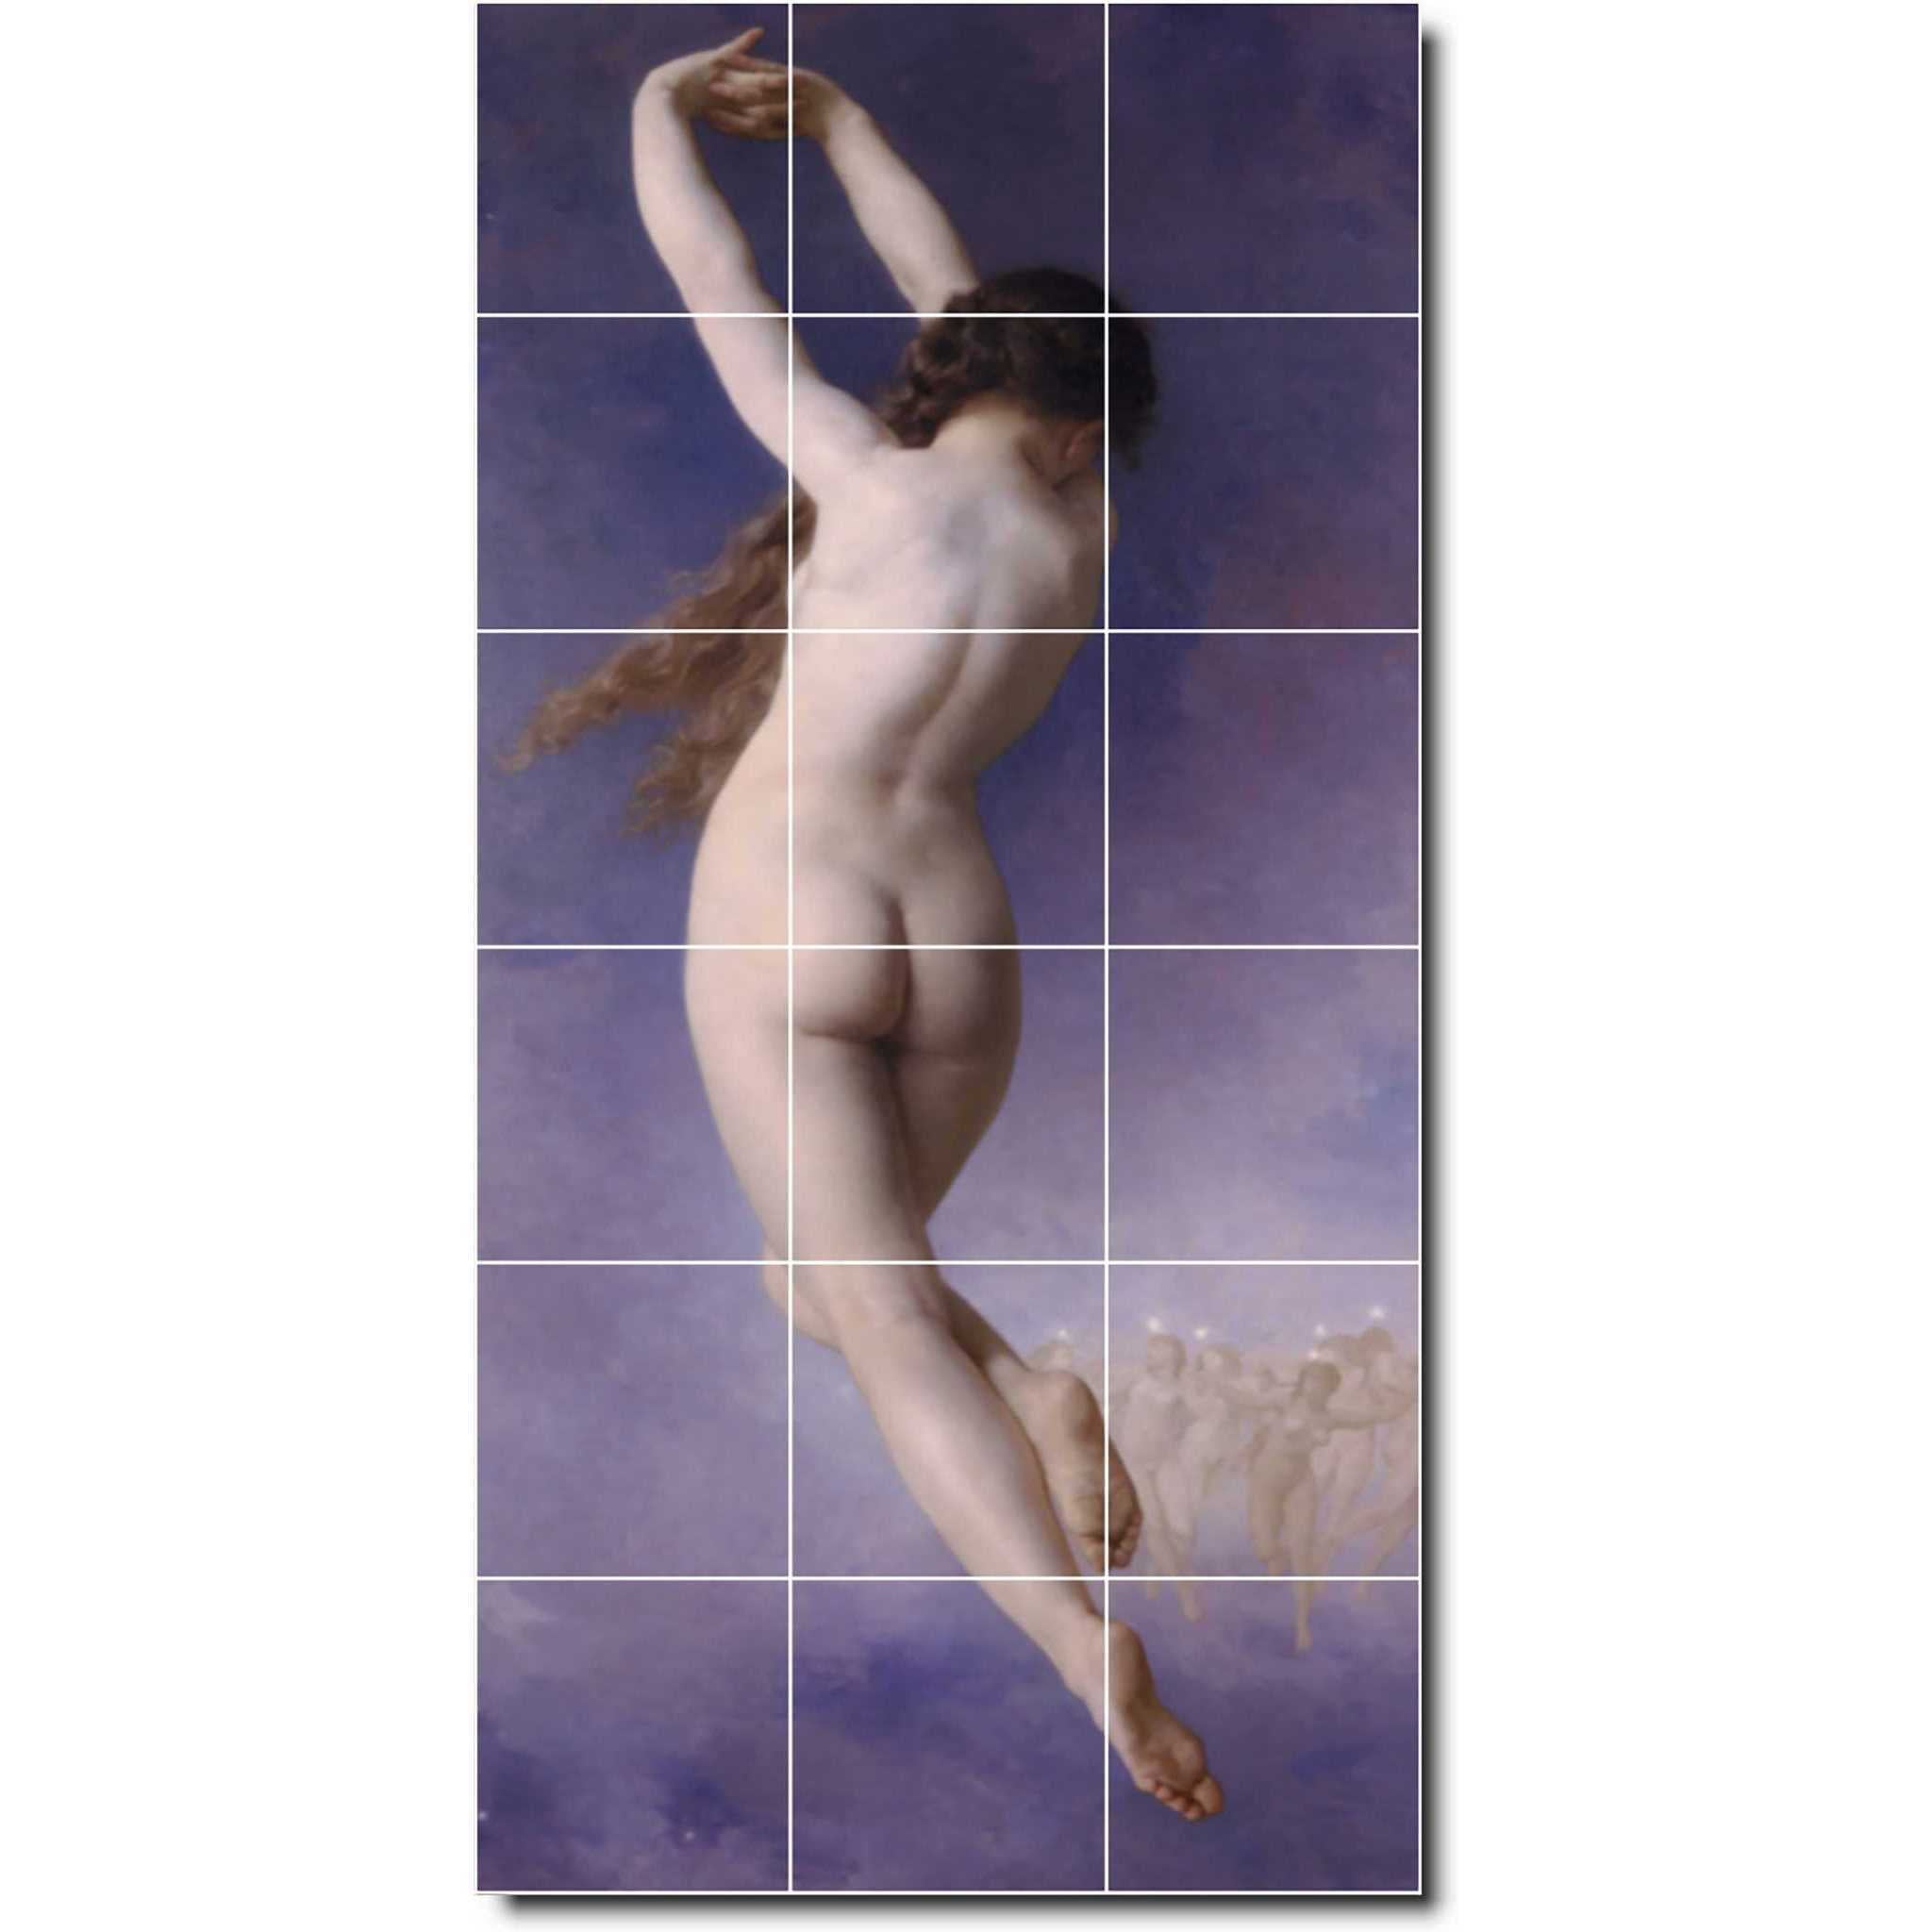 william bouguereau nude painting ceramic tile mural p00882